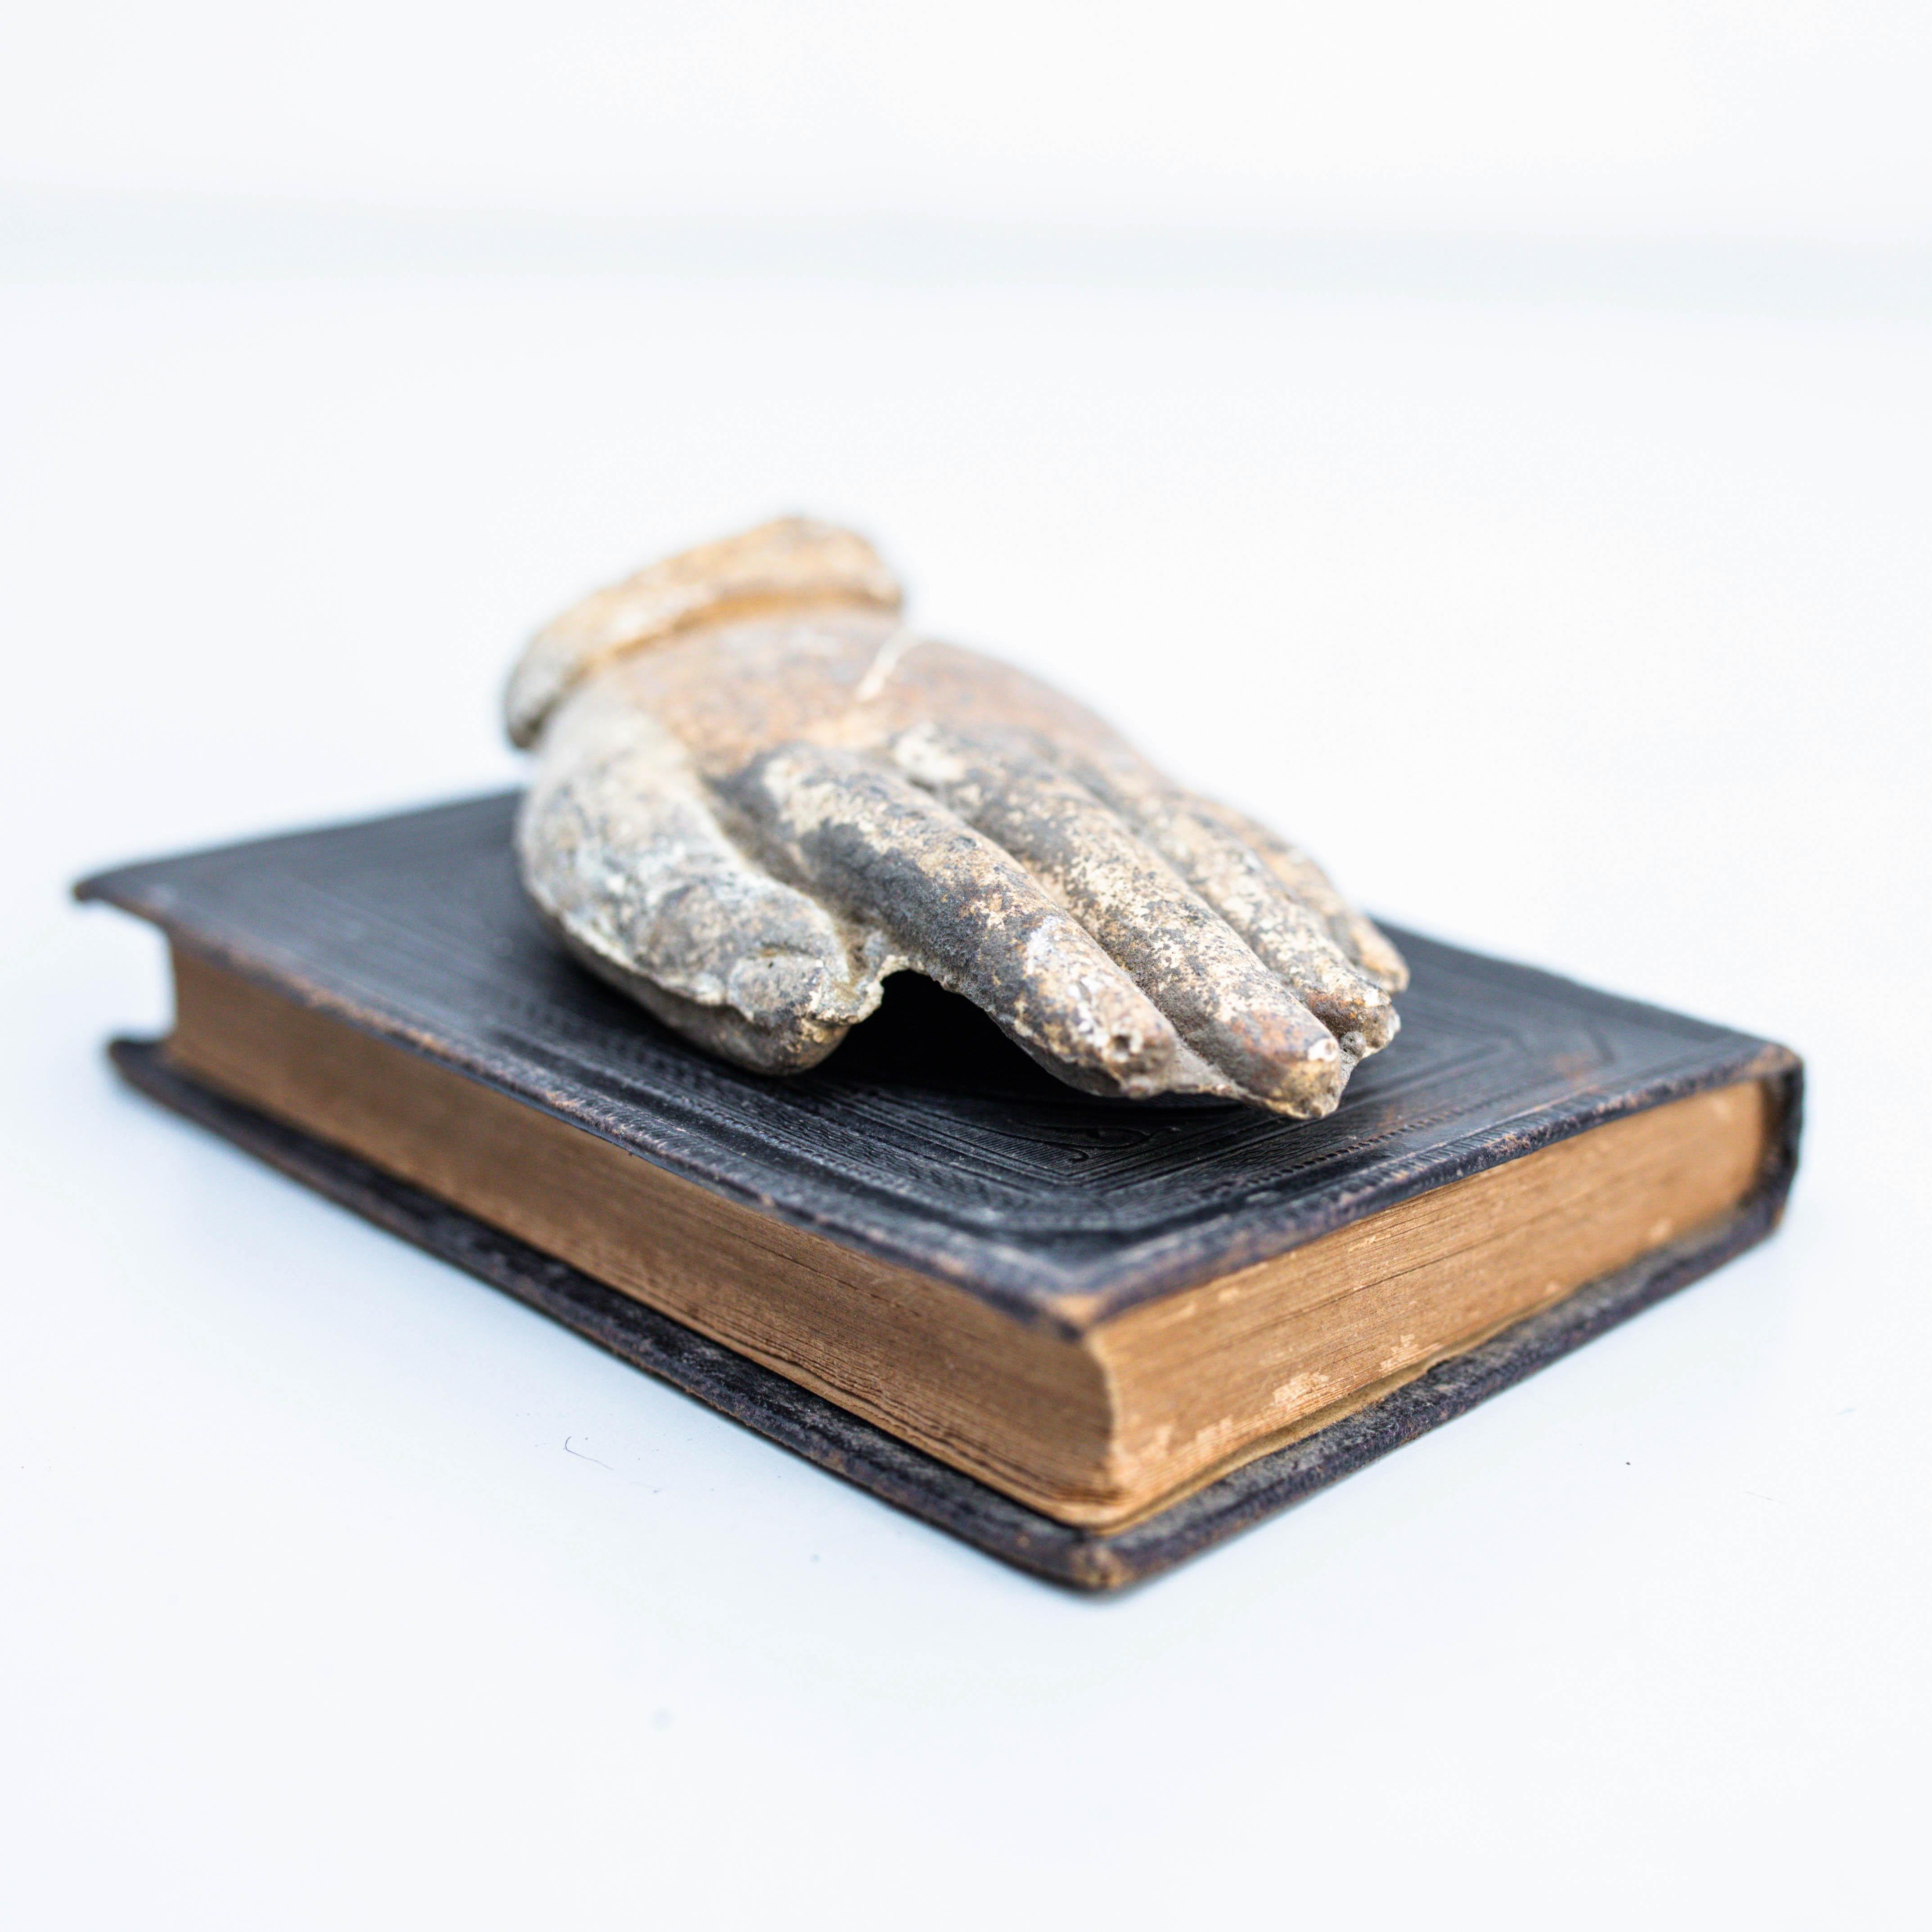 Kunstwerk mit altem Buch und geheimnisvoller Skulptur Hand.

Hergestellt von einem unbekannten Hersteller in Spanien, um 1990.

Originaler Zustand mit geringen alters- und gebrauchsbedingten Abnutzungserscheinungen, der eine schöne Patina